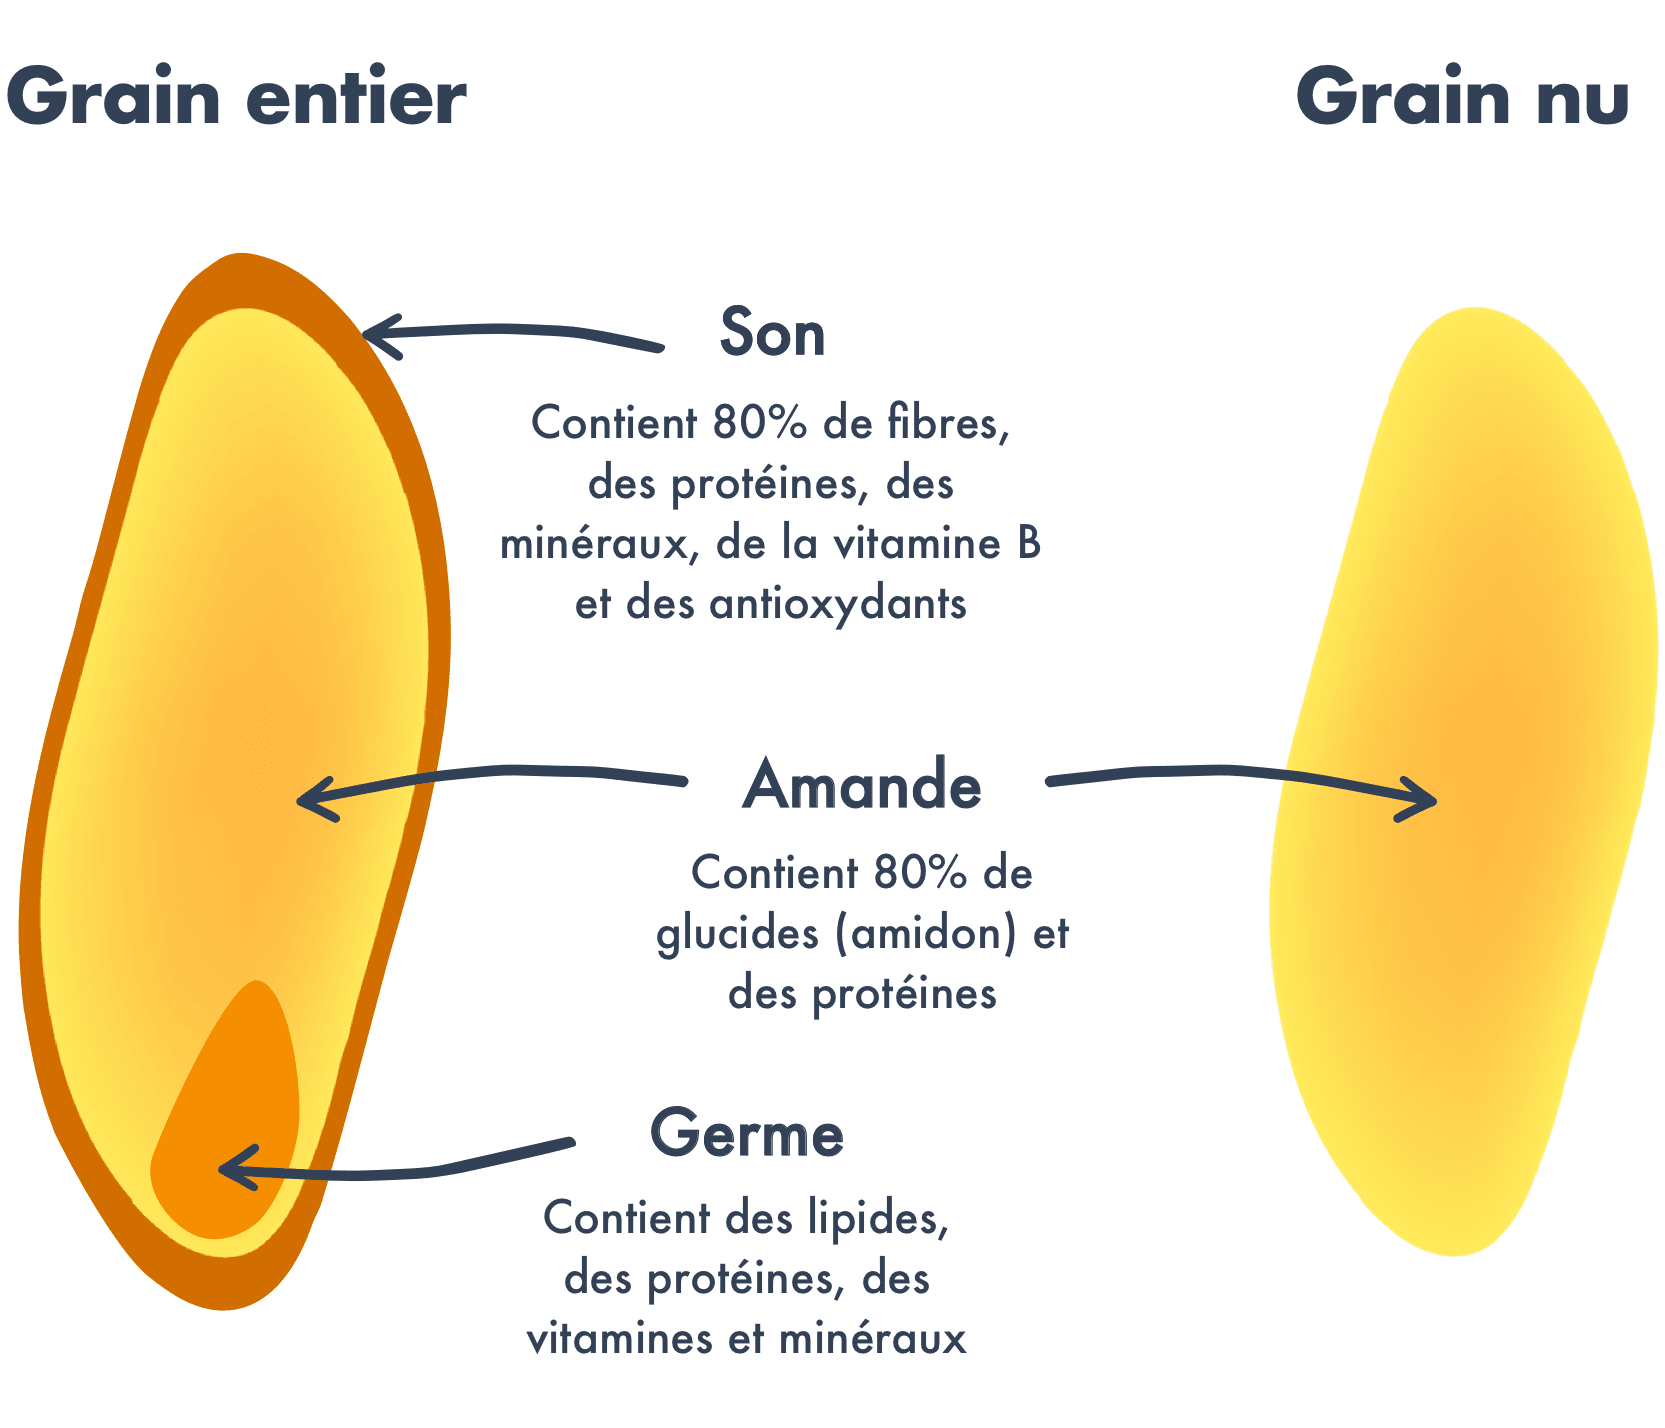 Farine de blé T65 - Du Grain au Pain